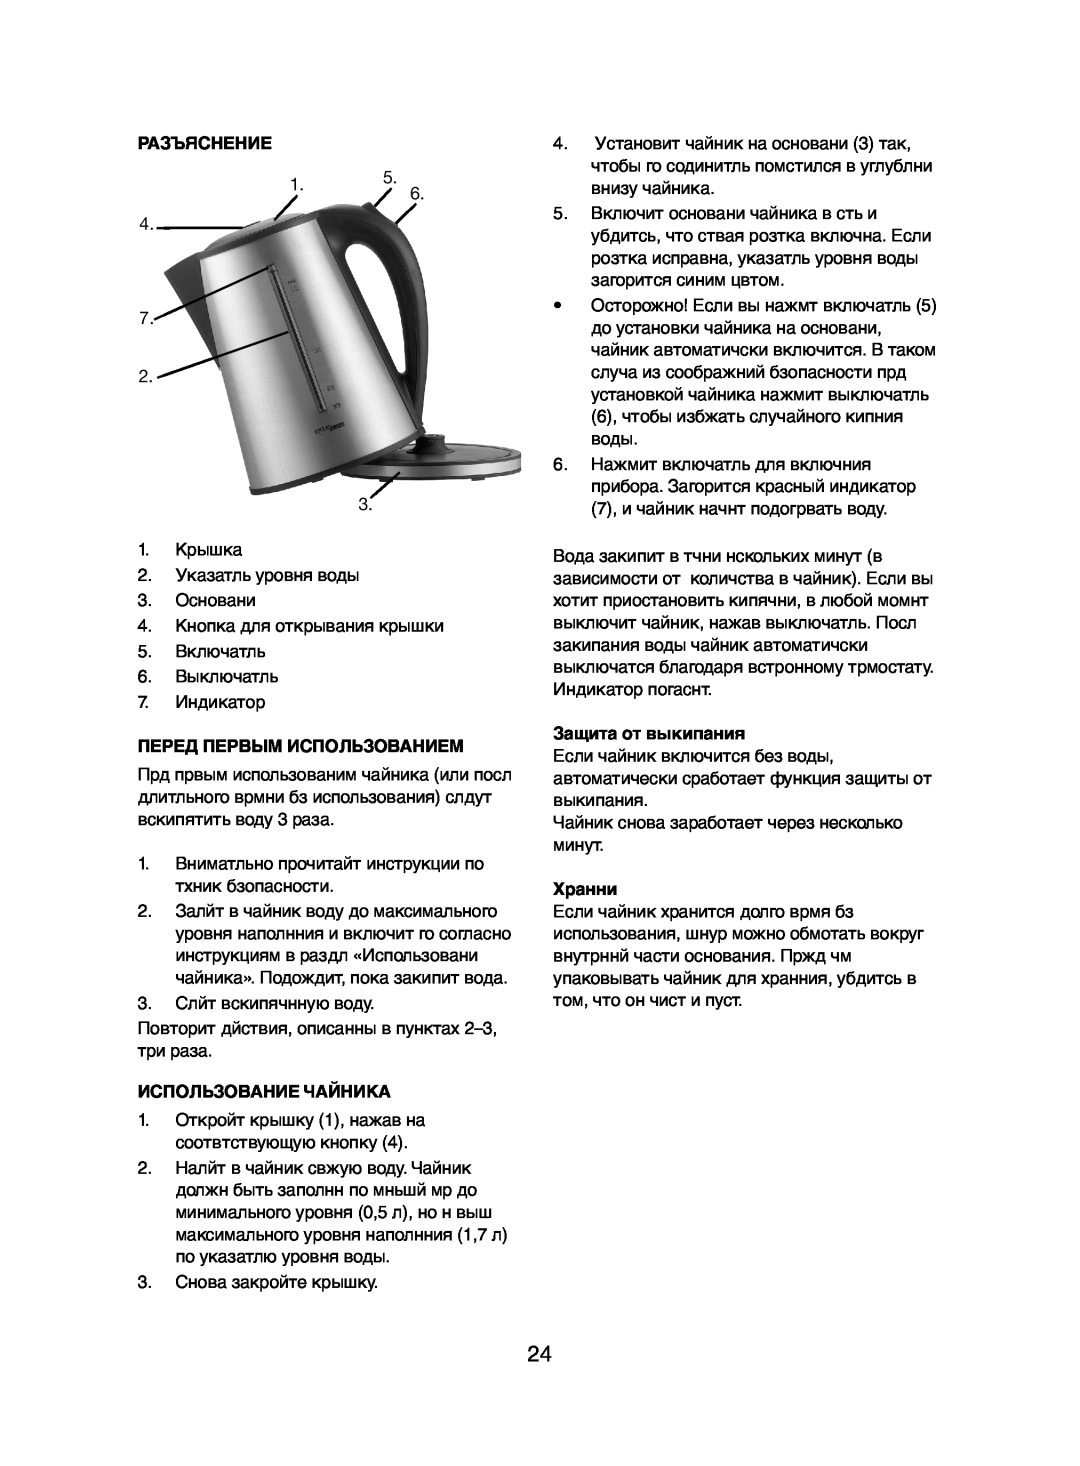 Melissa 245-046/052 manual Разъяснение, Перед Первым Использованием, Использование Чайника, Защита от выкипания, Хранни 